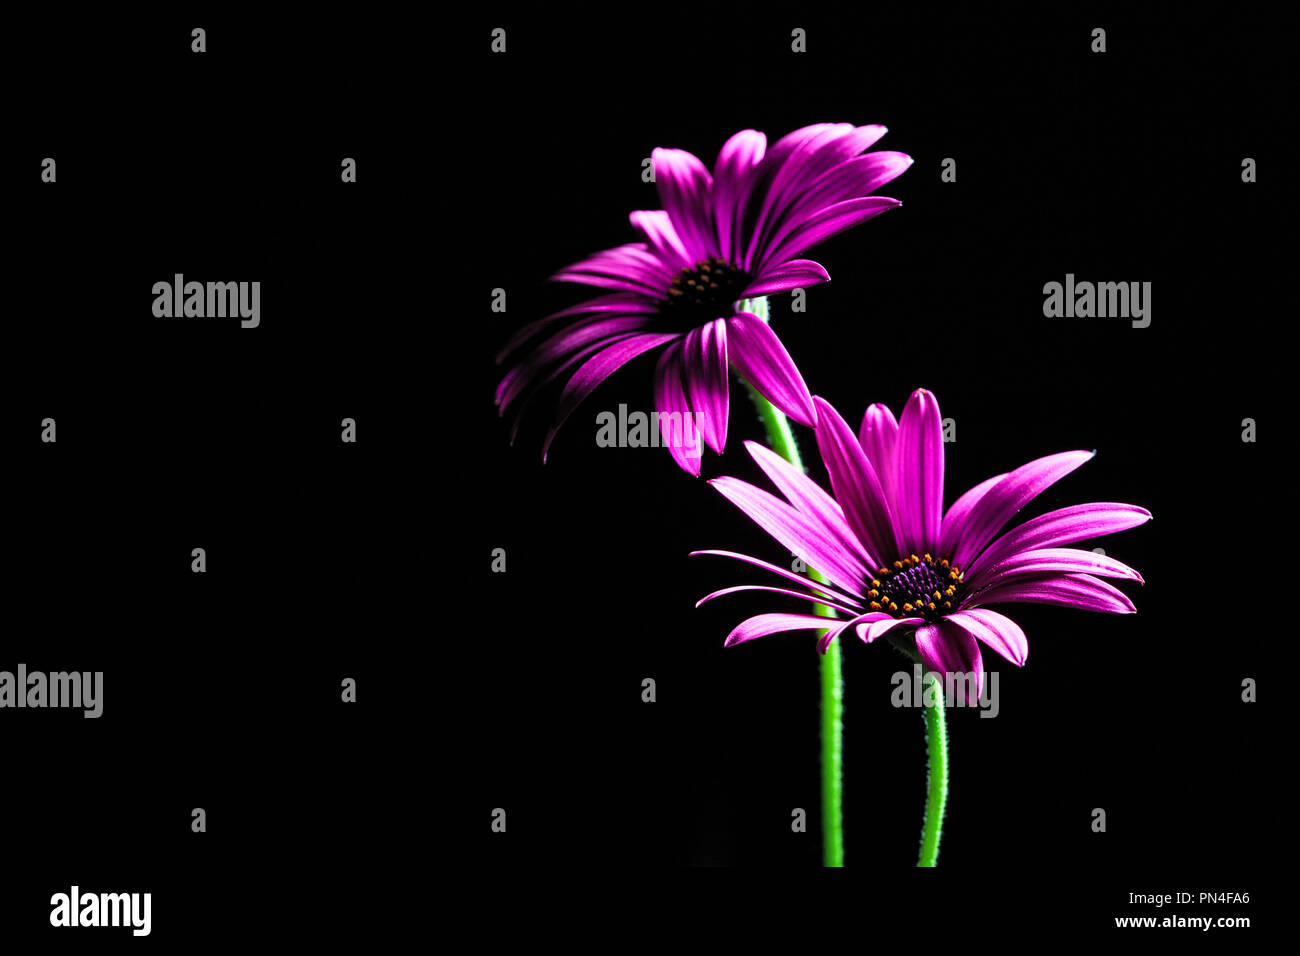 Purple daisies africains allumé par le haut - studio shot with copy space Banque D'Images